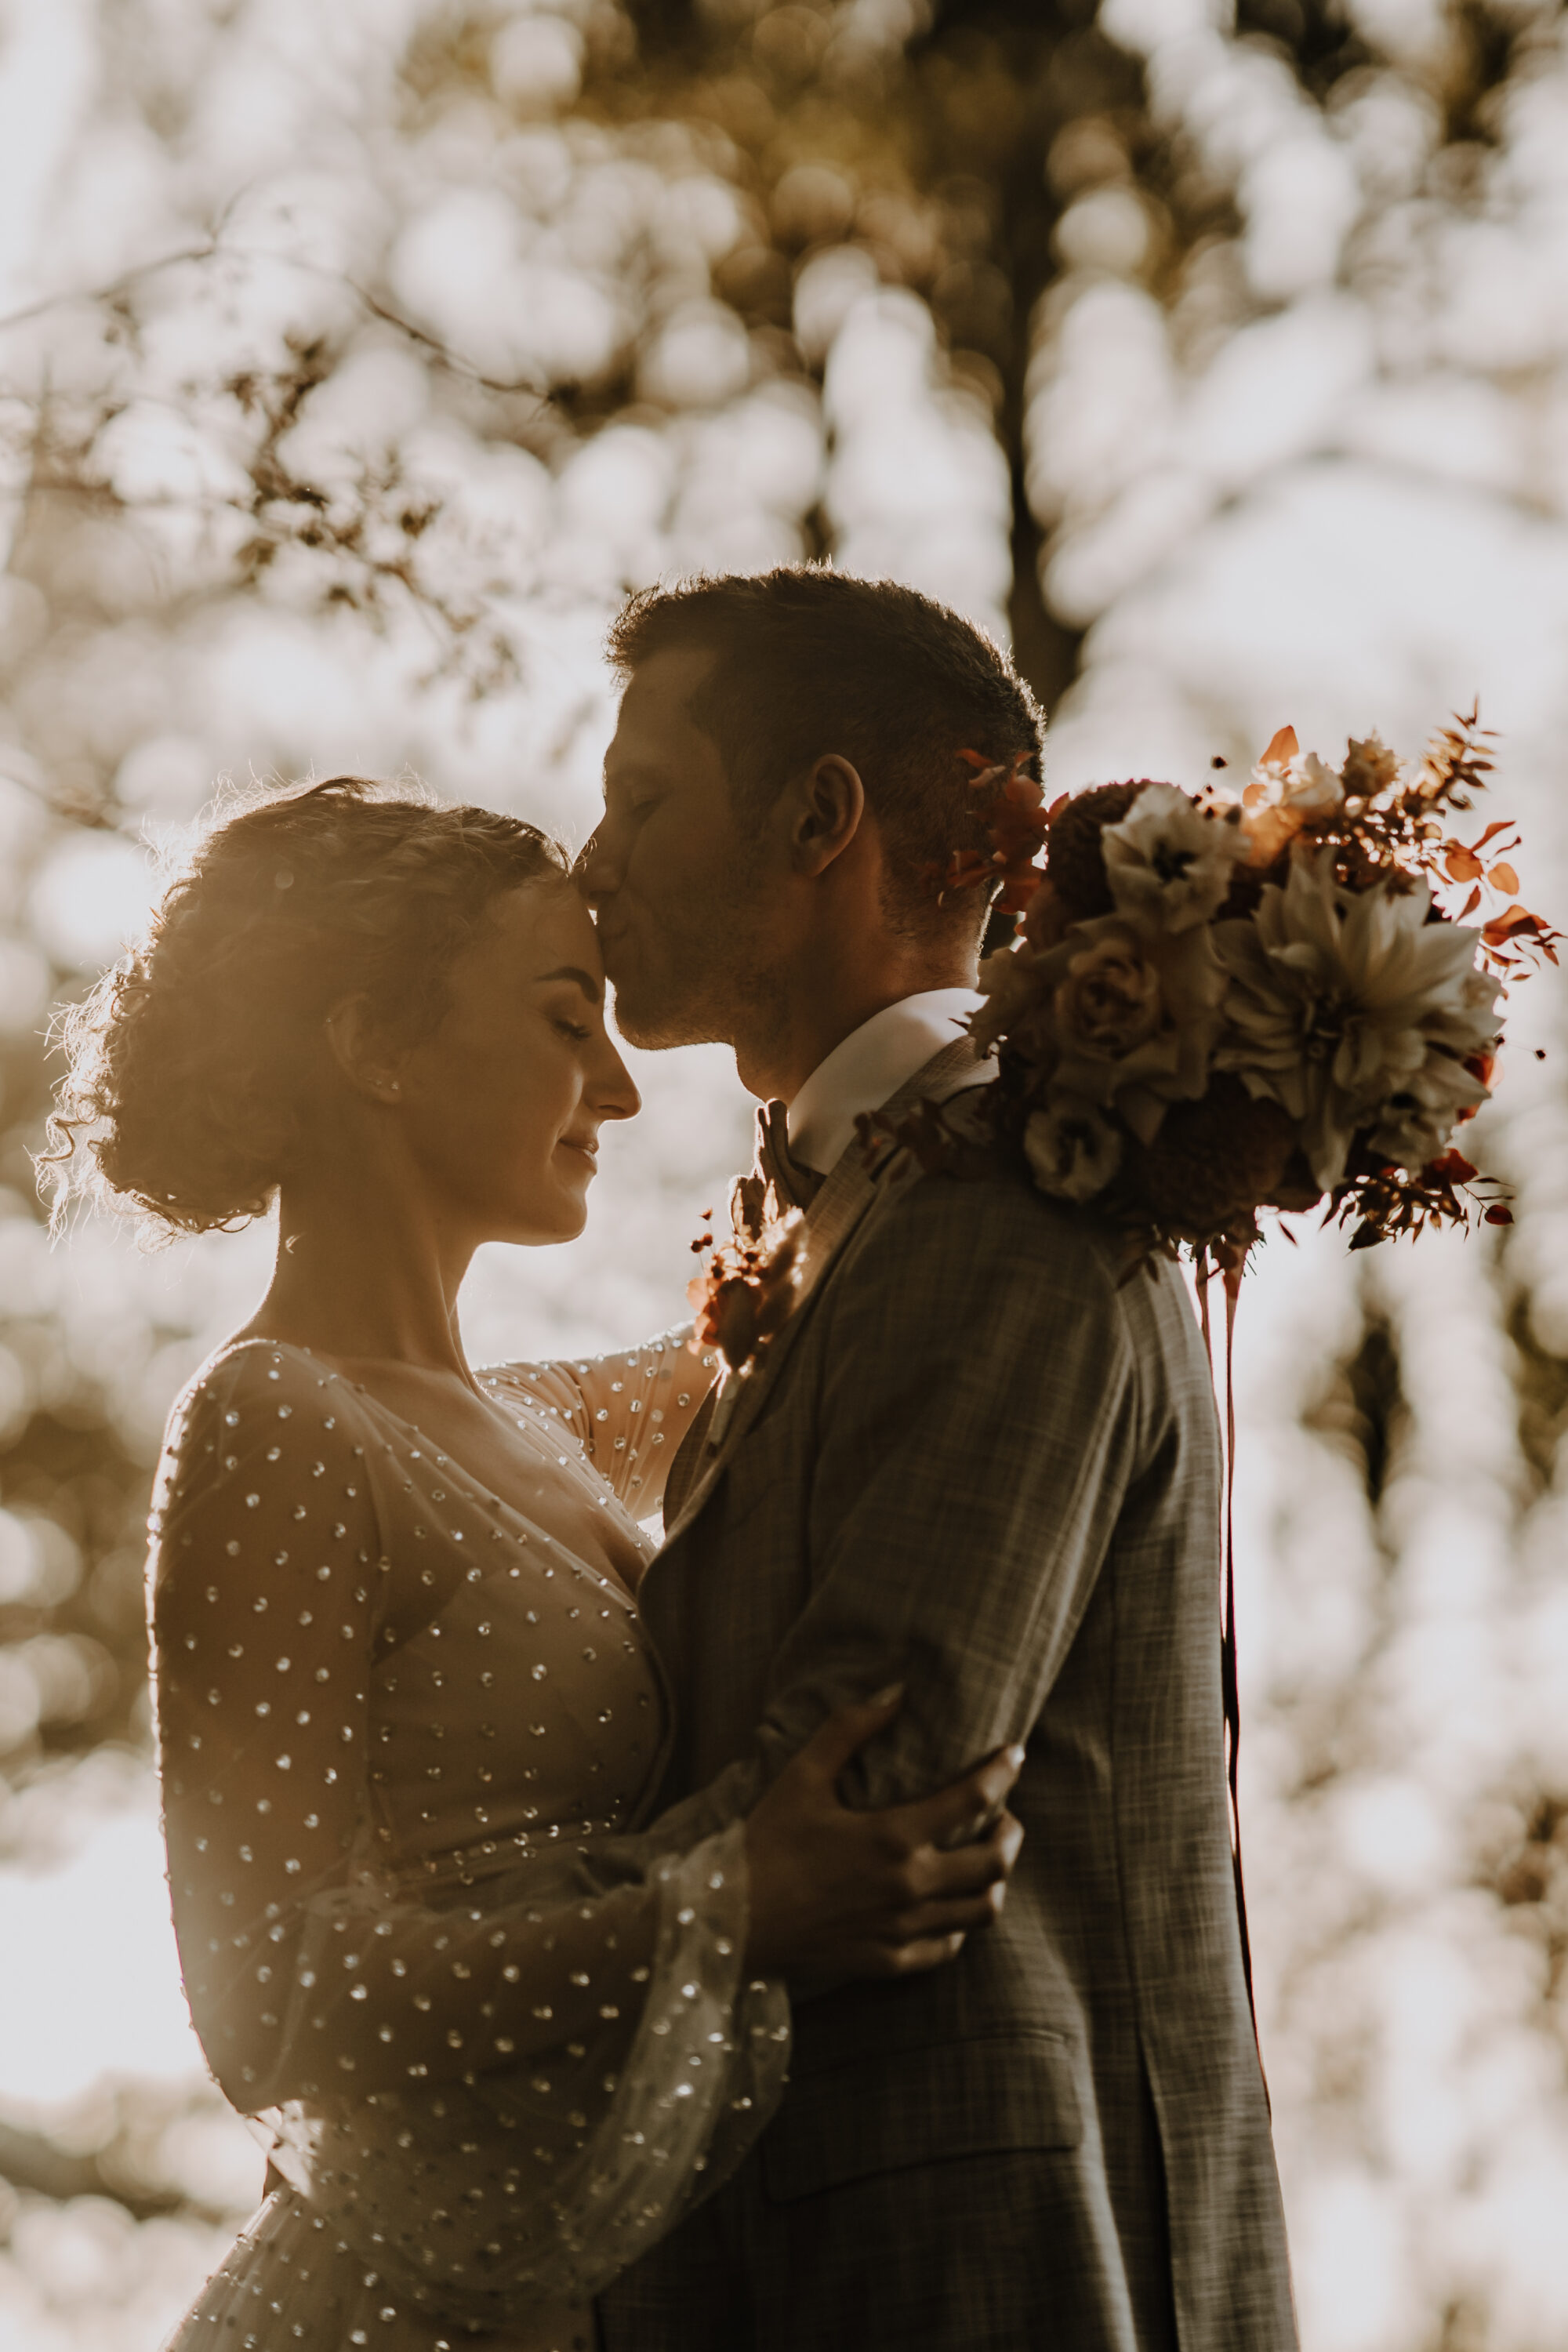 Hochzeitspaar, sich im Arm haltend, gegen Sonne, warmes Licht, Bräutigam küsst Braut auf Stirn